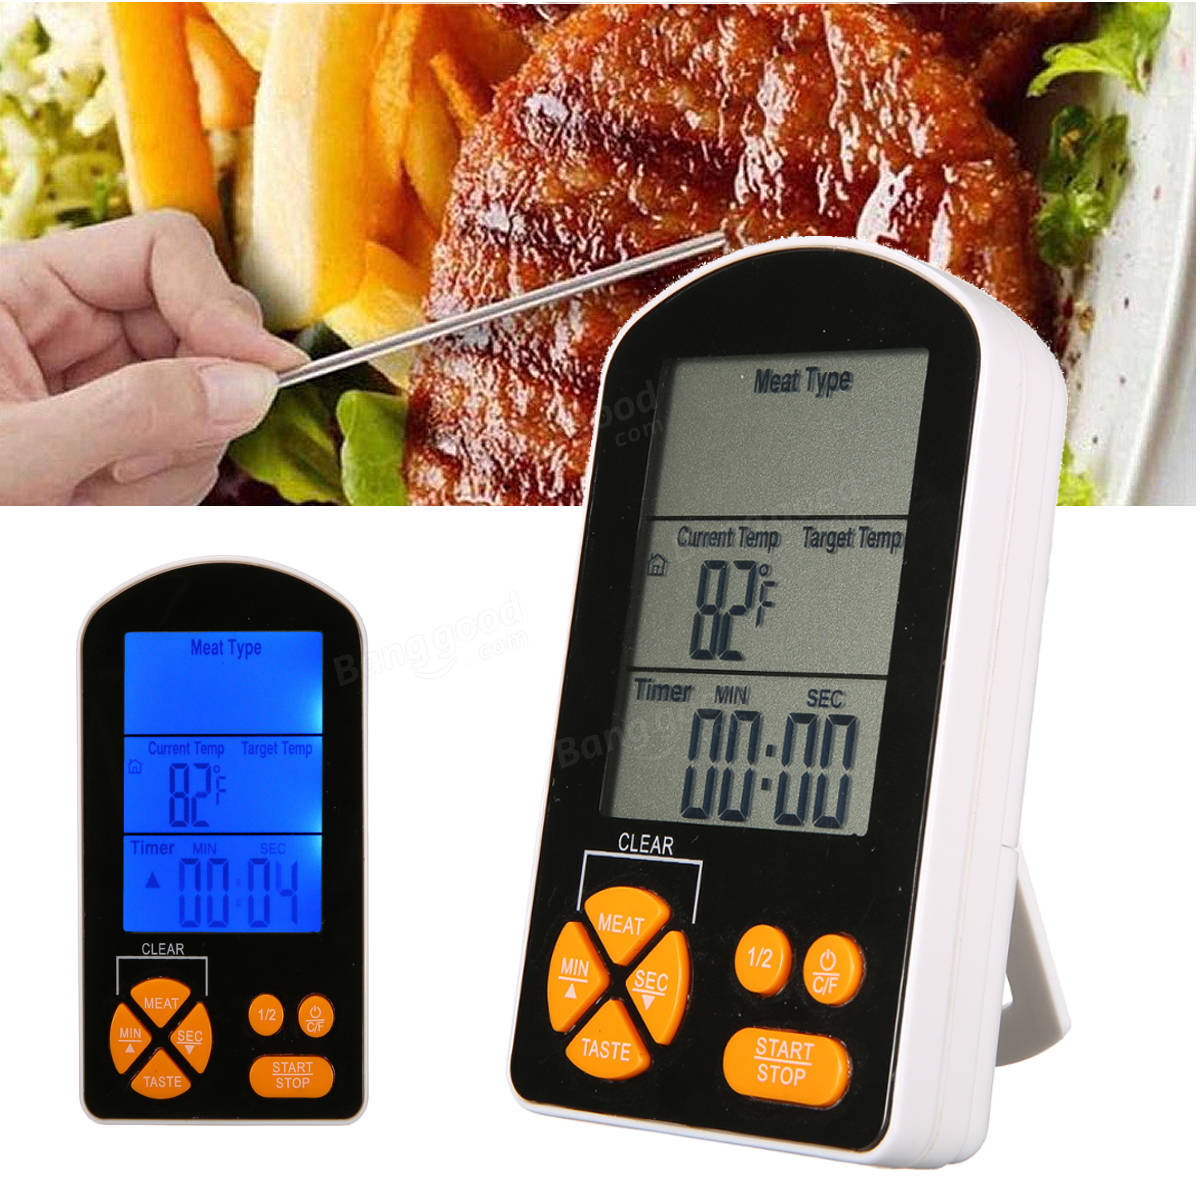 Termômetro digital com controle remoto LCD para cozinhar churrasco ao ar livre com temporizador e alarme embutidos, funciona com bateria AAA.